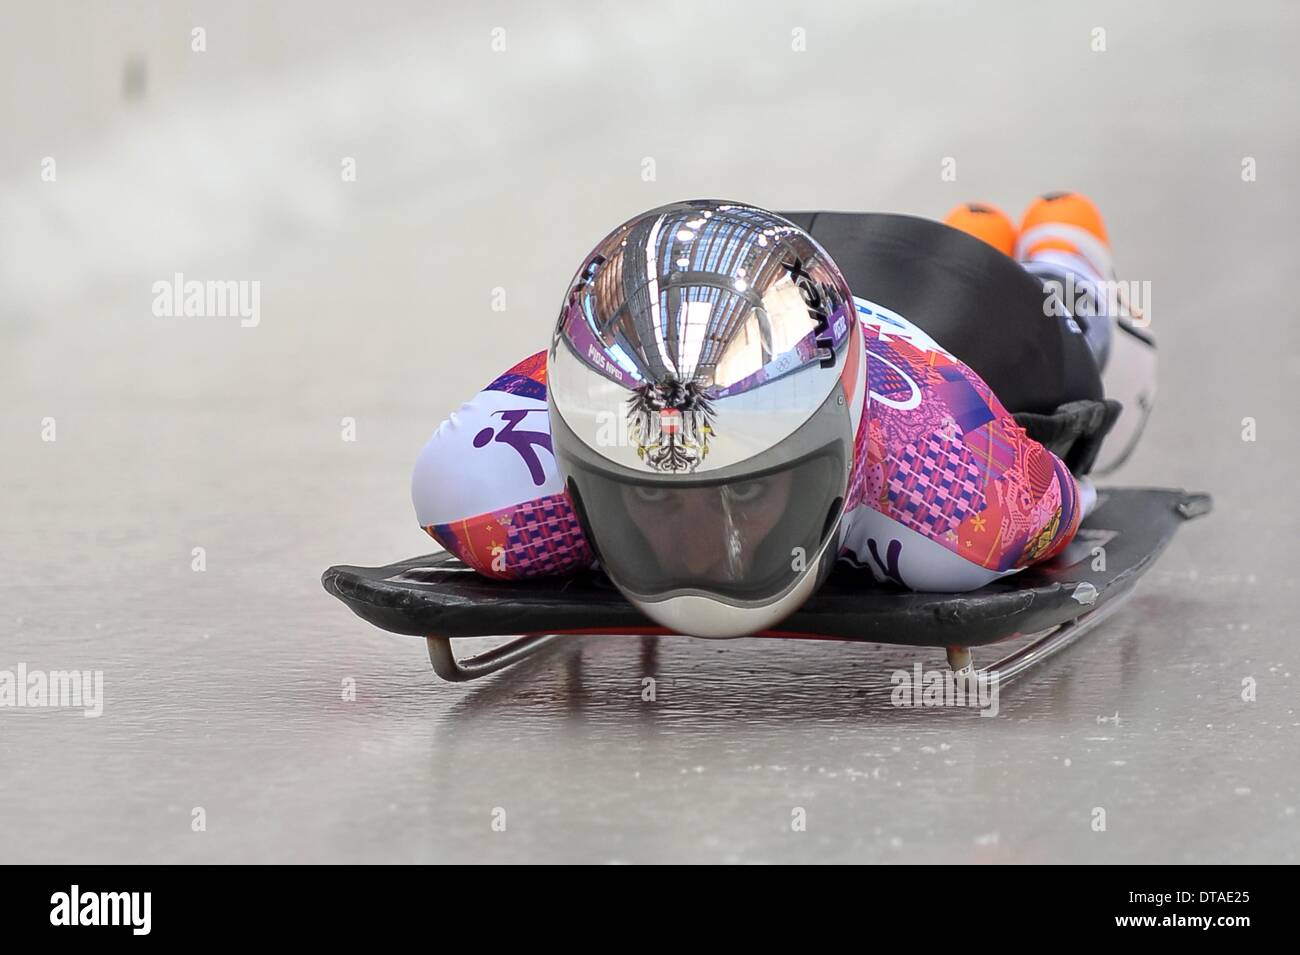 Jeux Olympiques d'hiver de Sotchi 2014 : Janine Flock (AUT). Womens Skeleton - Centre des sports de glisse Sanki - Sotchi - Russie - 13/02/2014 Credit : Sport en images/Alamy Live News Banque D'Images